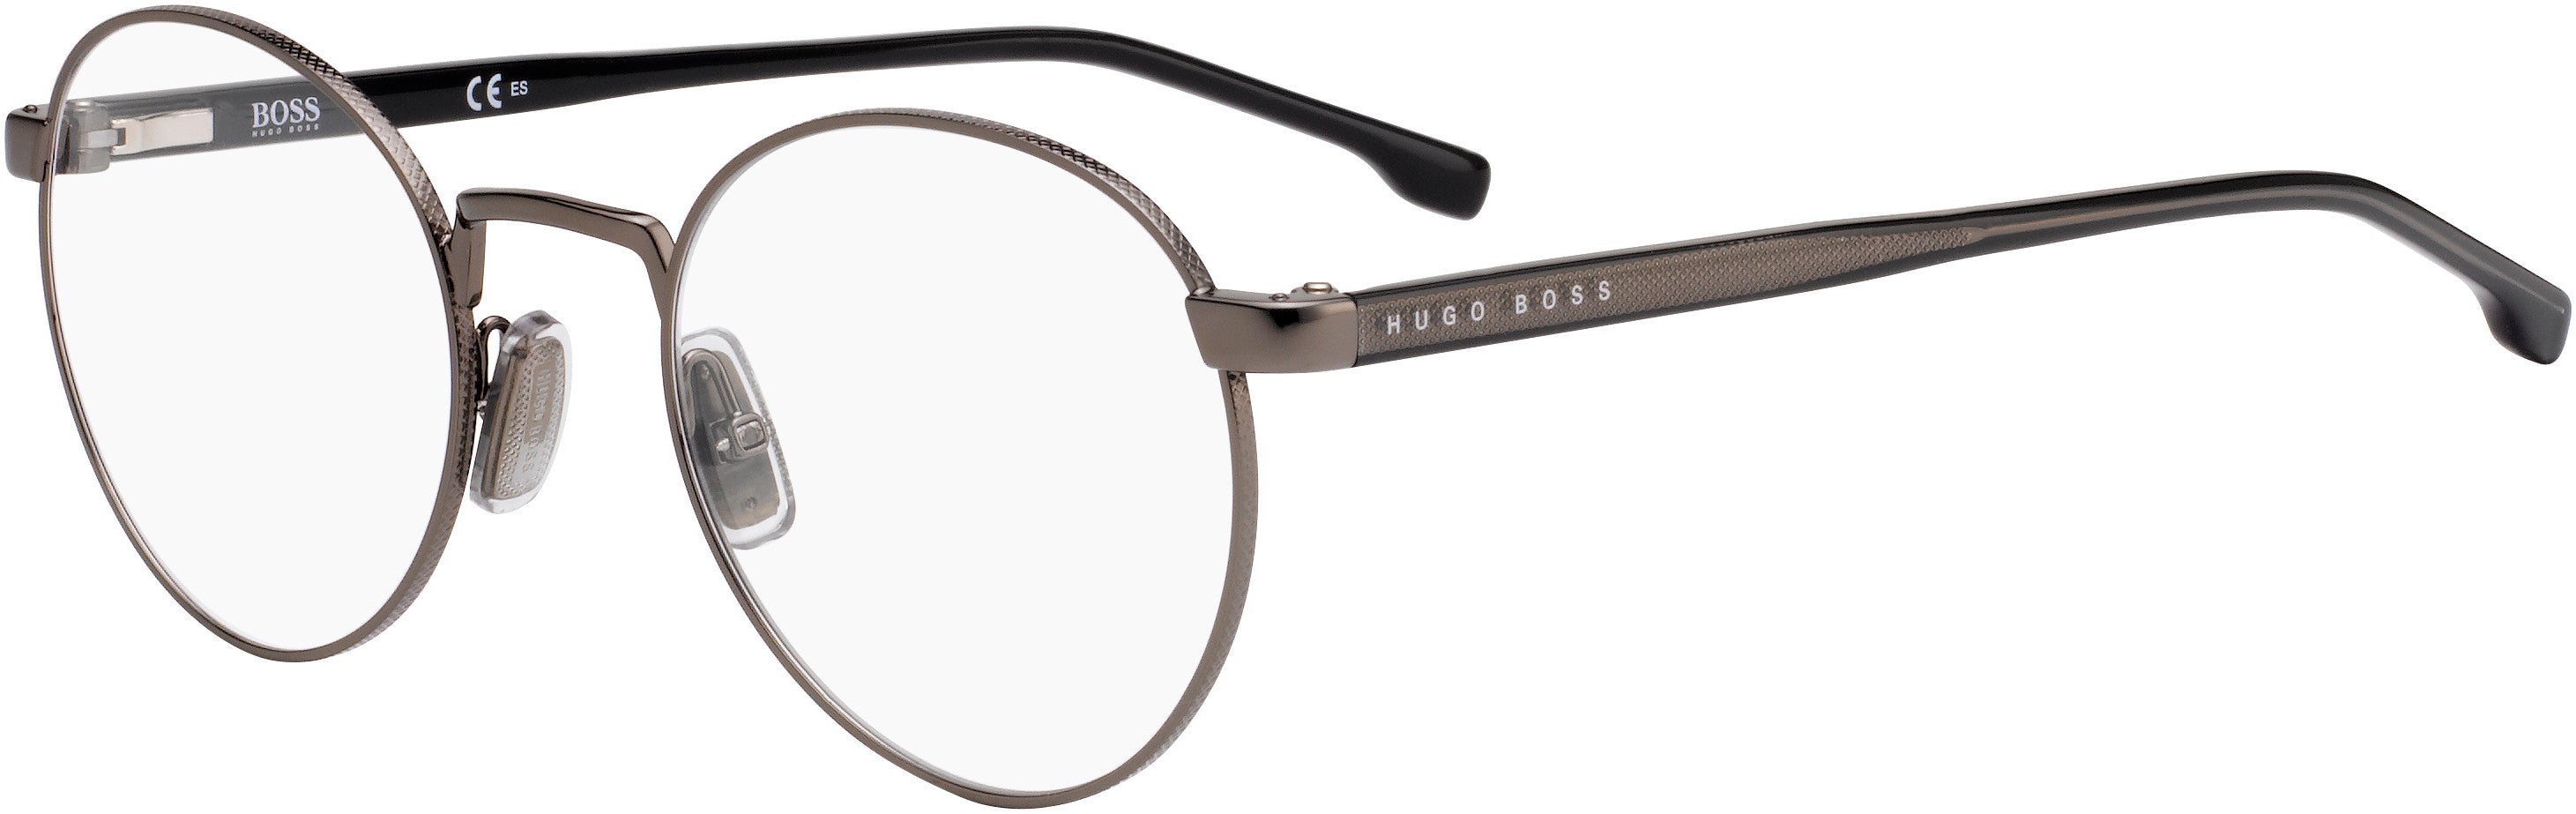 Boss (hub) Boss 1047 Oval Modified Eyeglasses 0V81-0V81  Dark Ruthenium Black (00 Demo Lens)